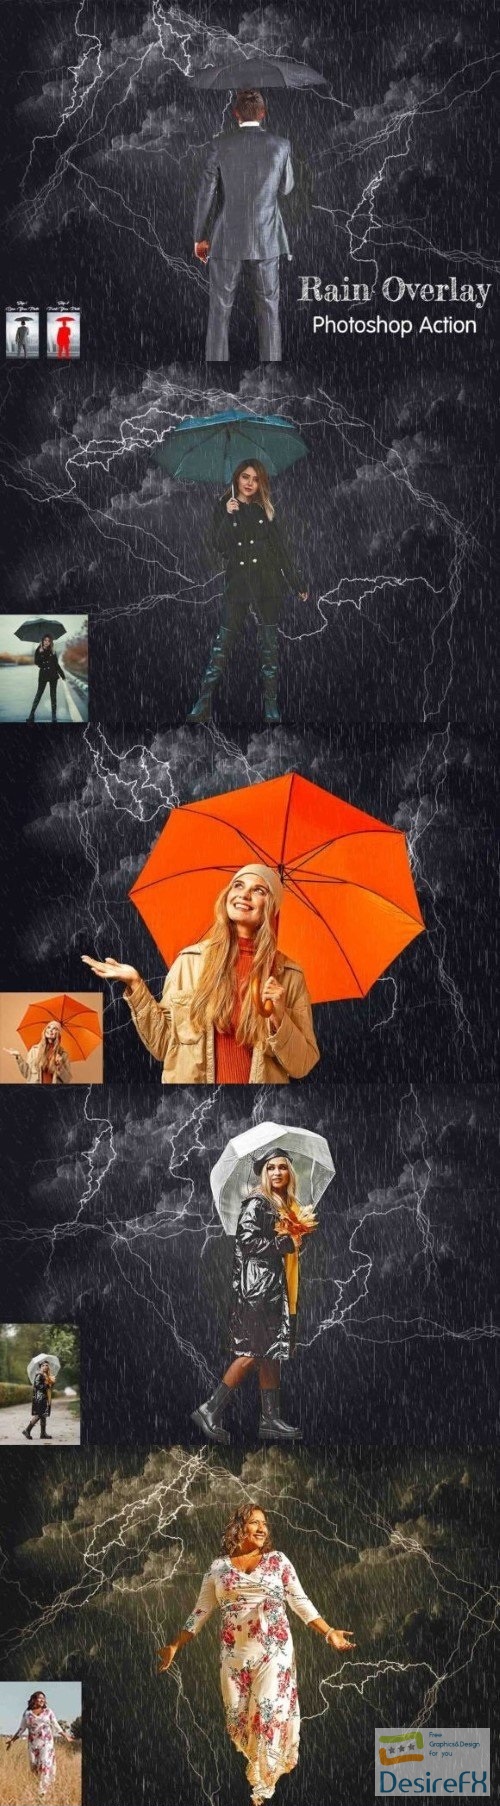 Rain Overlay Photoshop Action - 91957787